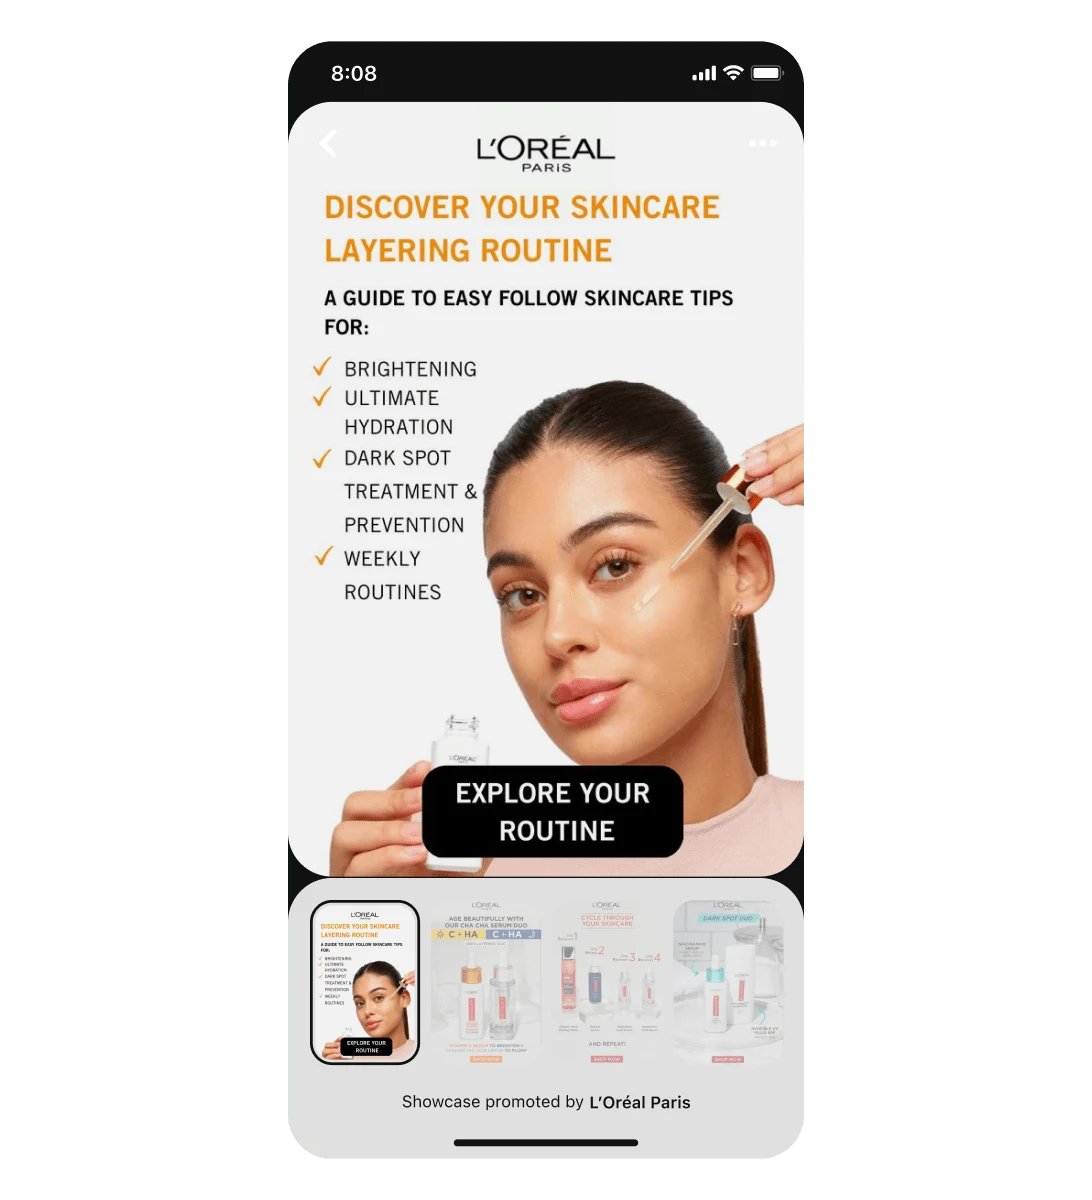 Tampilan layar seluler menampilkan iklan pameran L'Oreal yang menyoroti seorang perempuan Latin menggunakan serum wajah. Tiga kartu yang bisa digeser mengikuti pin judul ini.